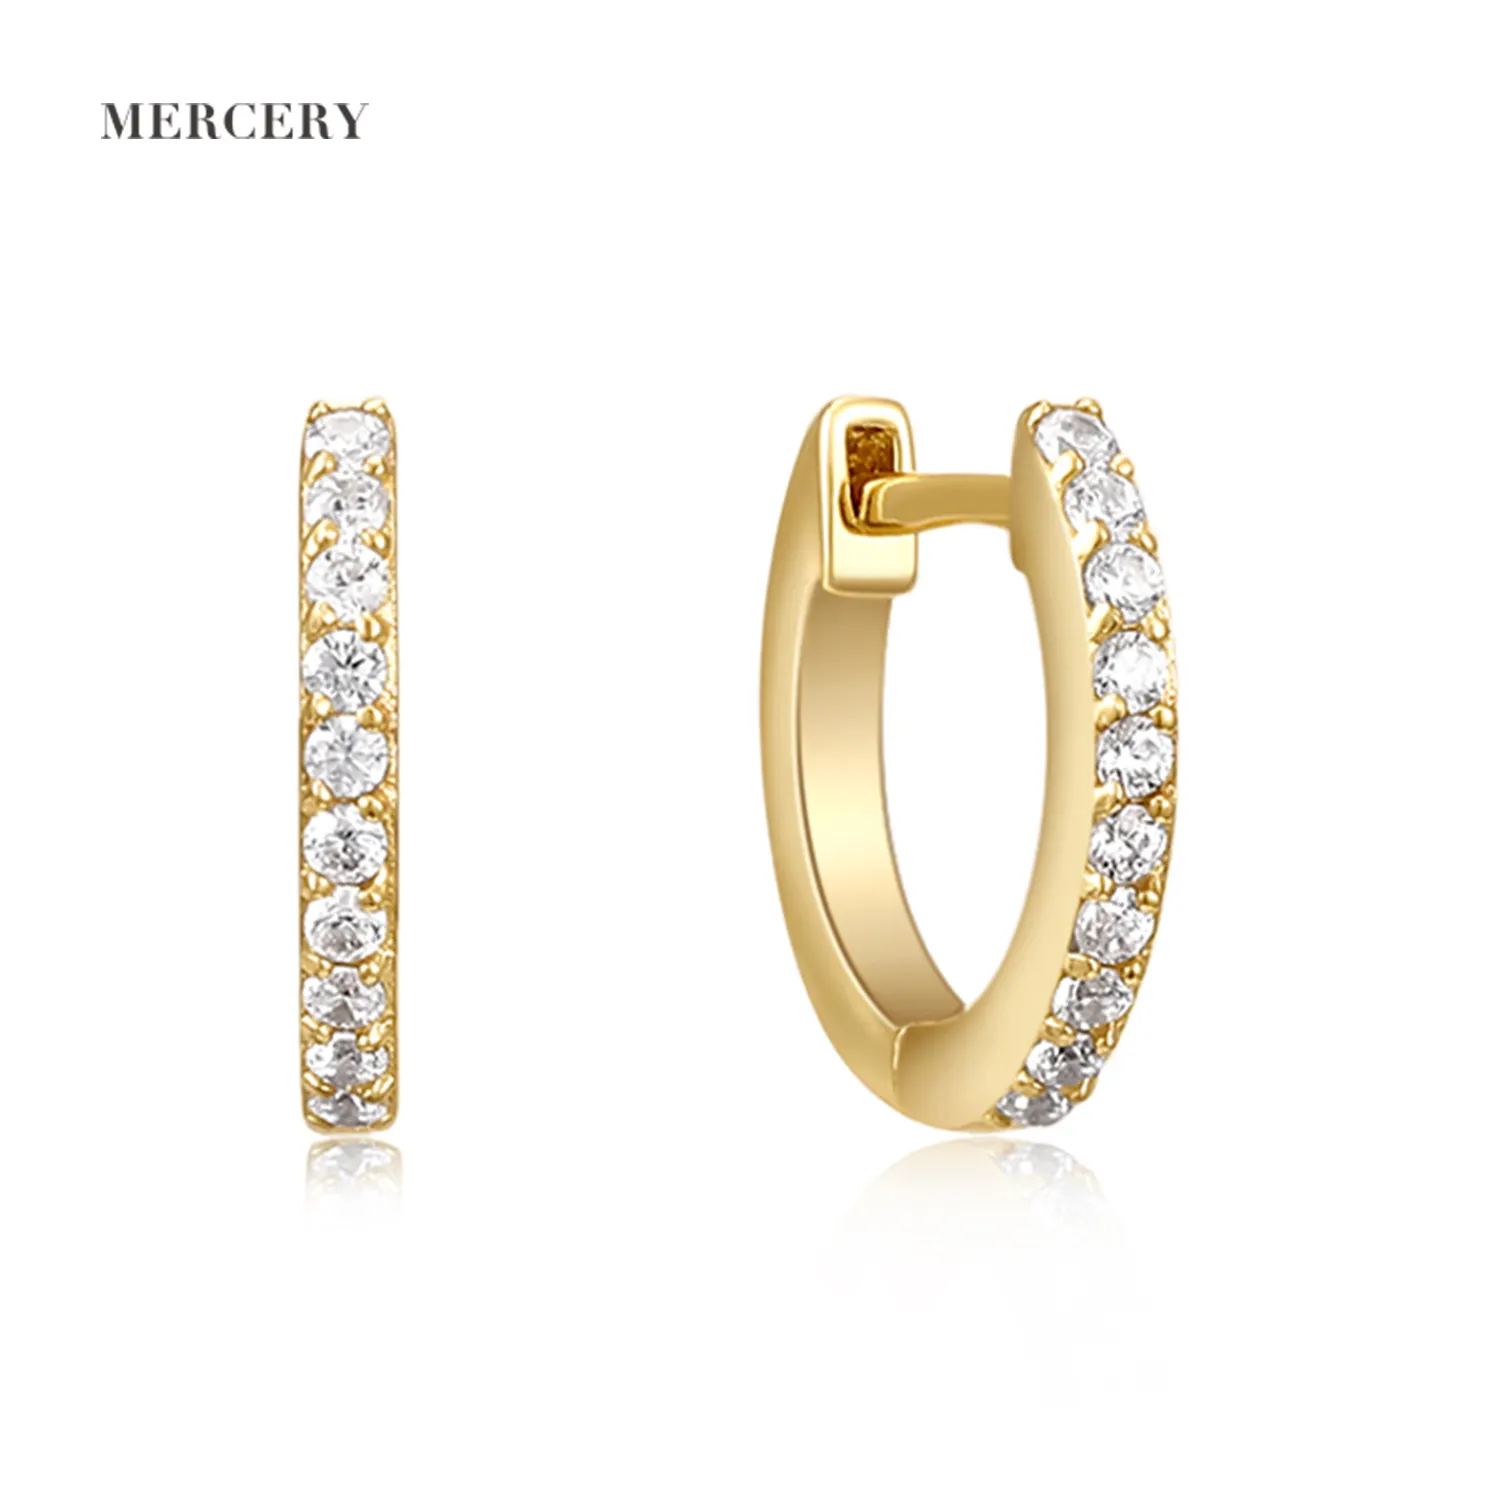 Mercery Fashion Jewelry Set Silver 925 Bright Zircon 14K Gold Plated Hoop Earrings Silver Gemstone Jewelry Women Fine Earring